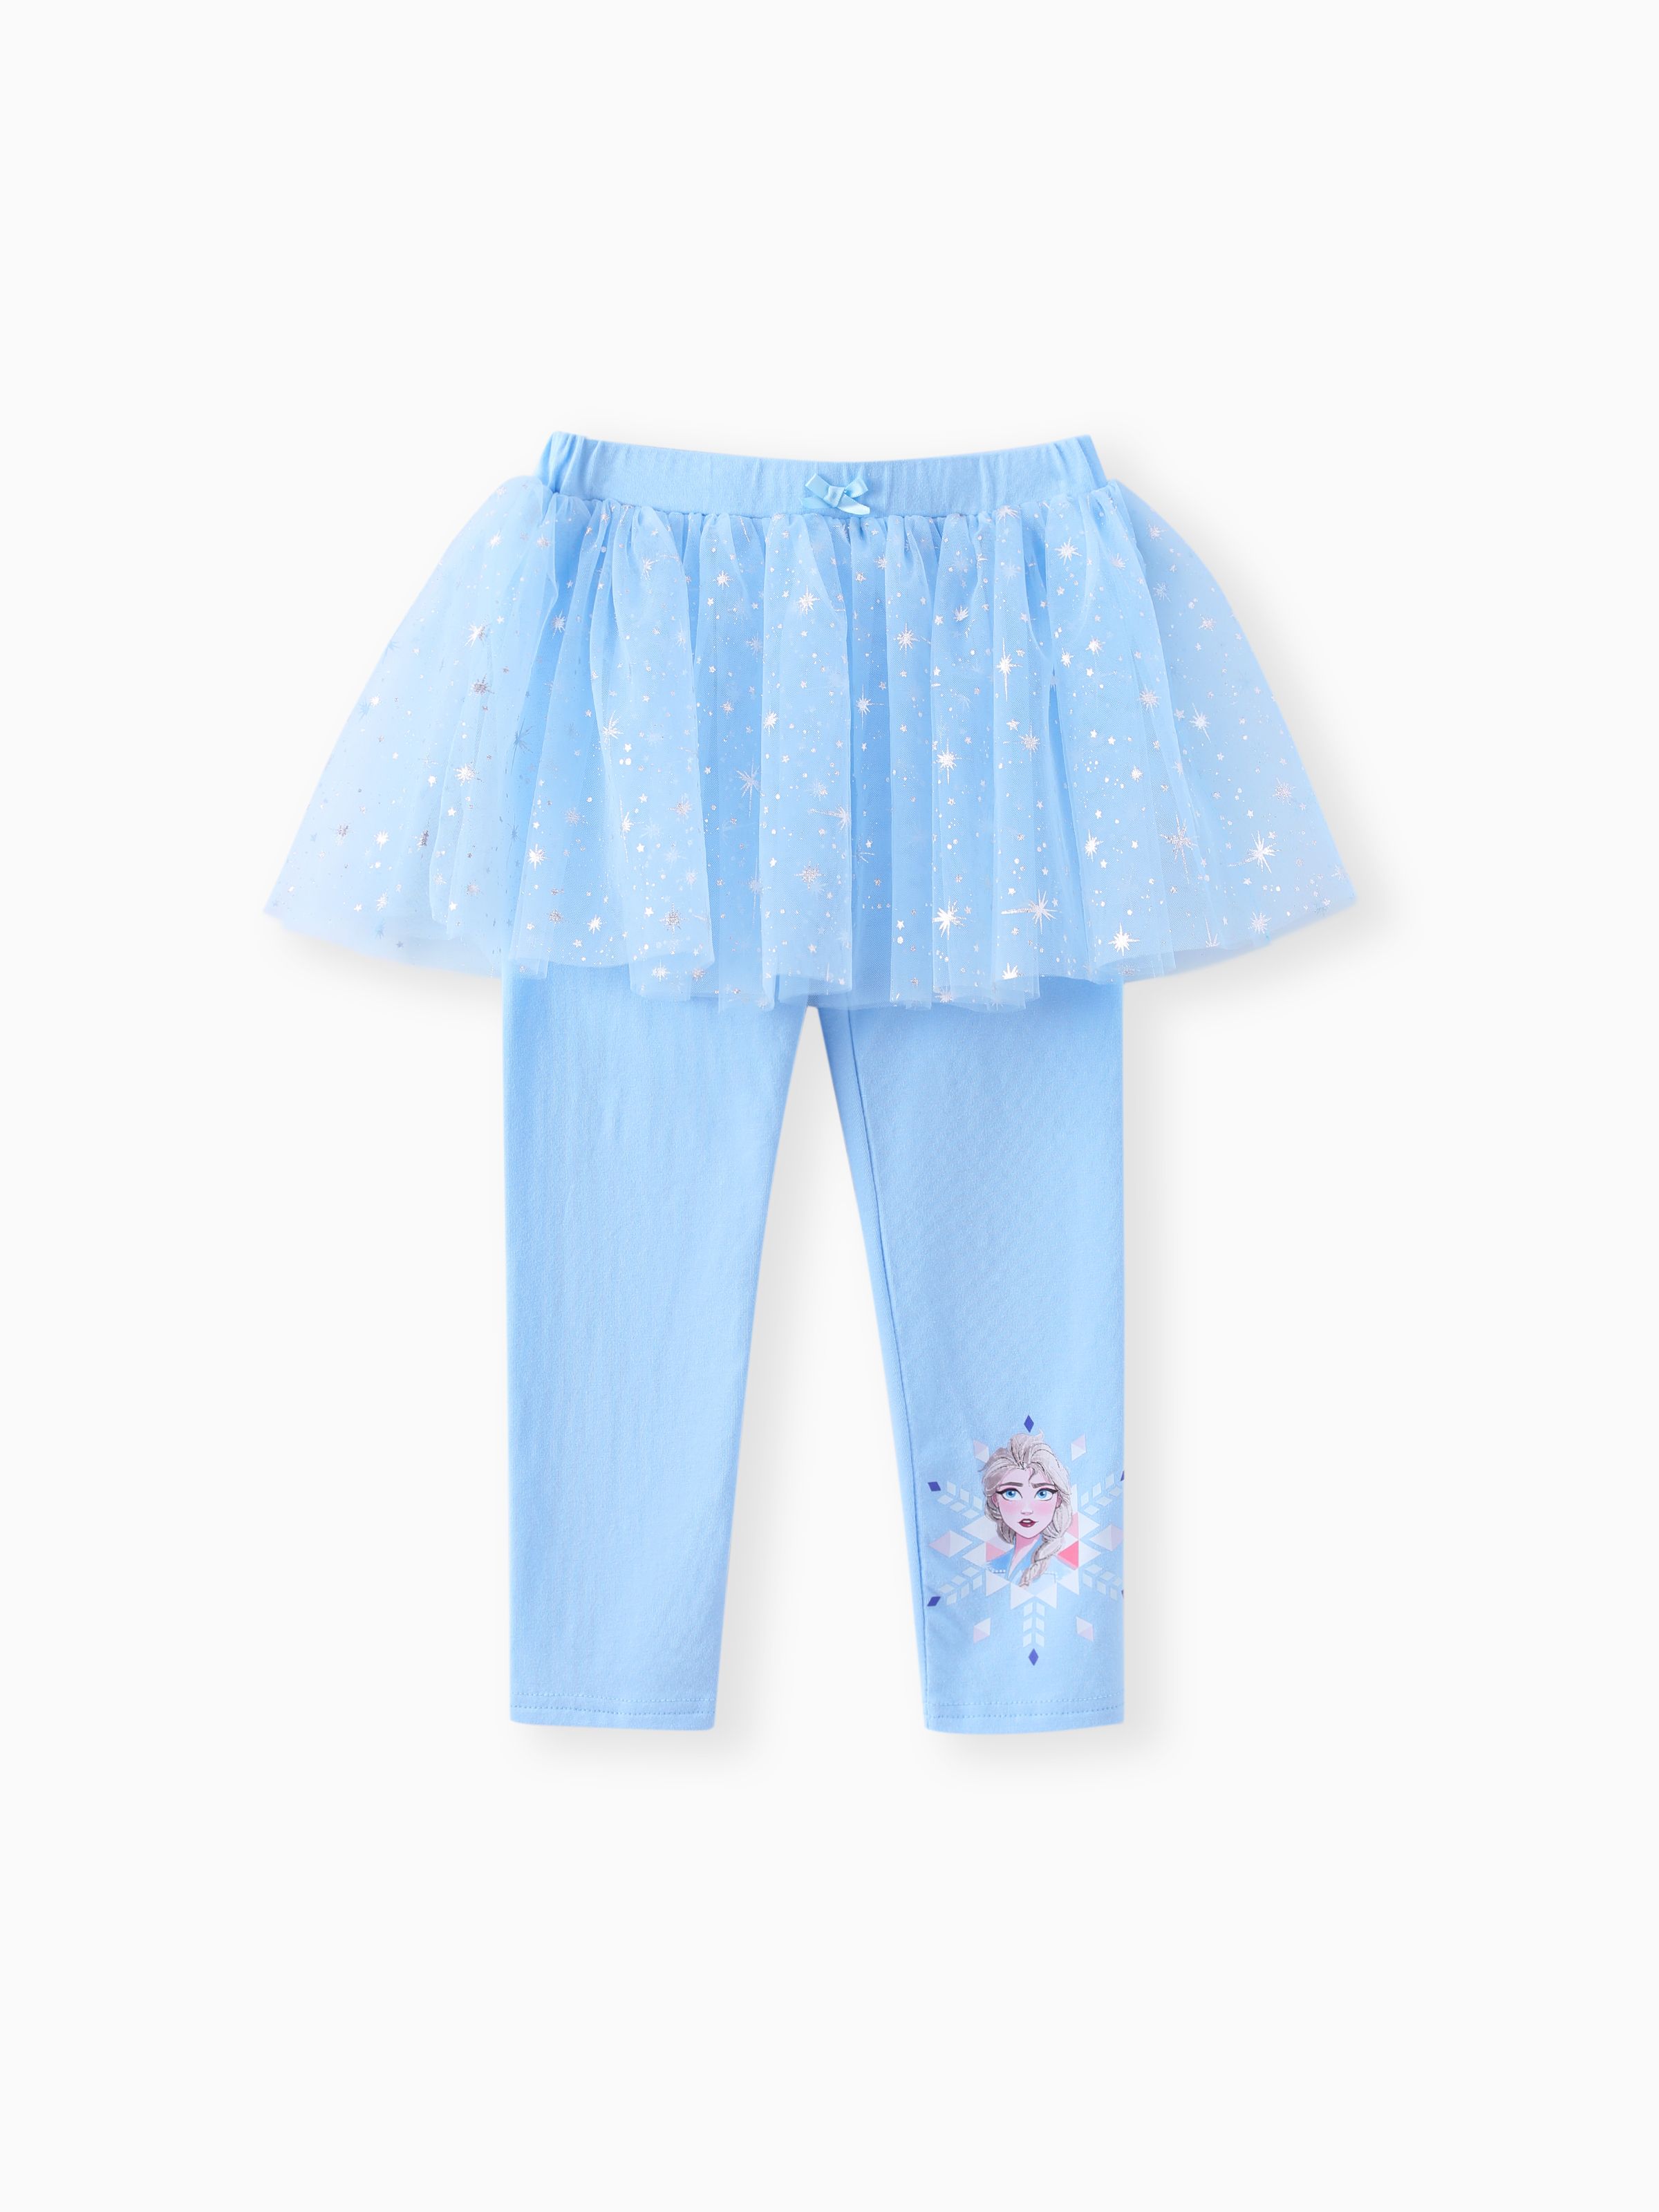 

Disney Frozen Toddler Girls 1pc Cotton Tulle Skirt Leggings